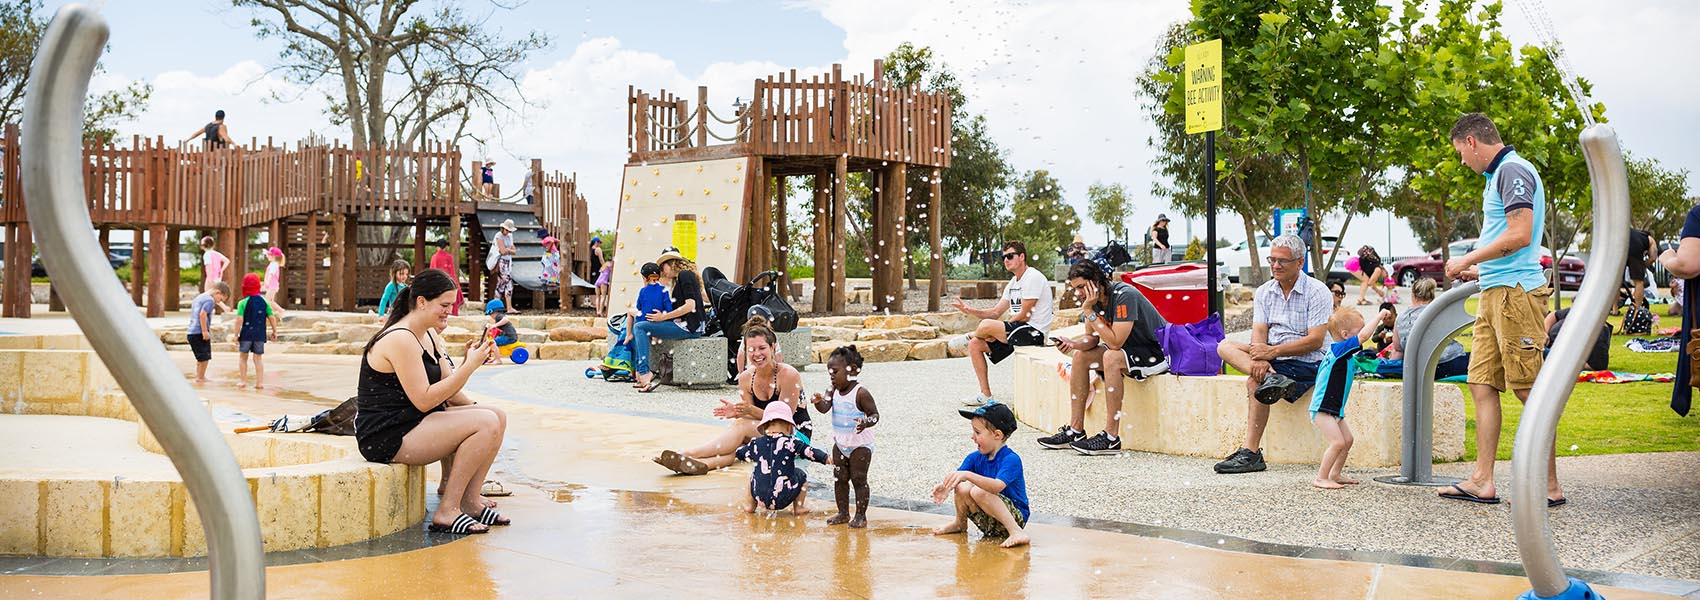 Kinkuna Park in Allara Estate features a free water playground